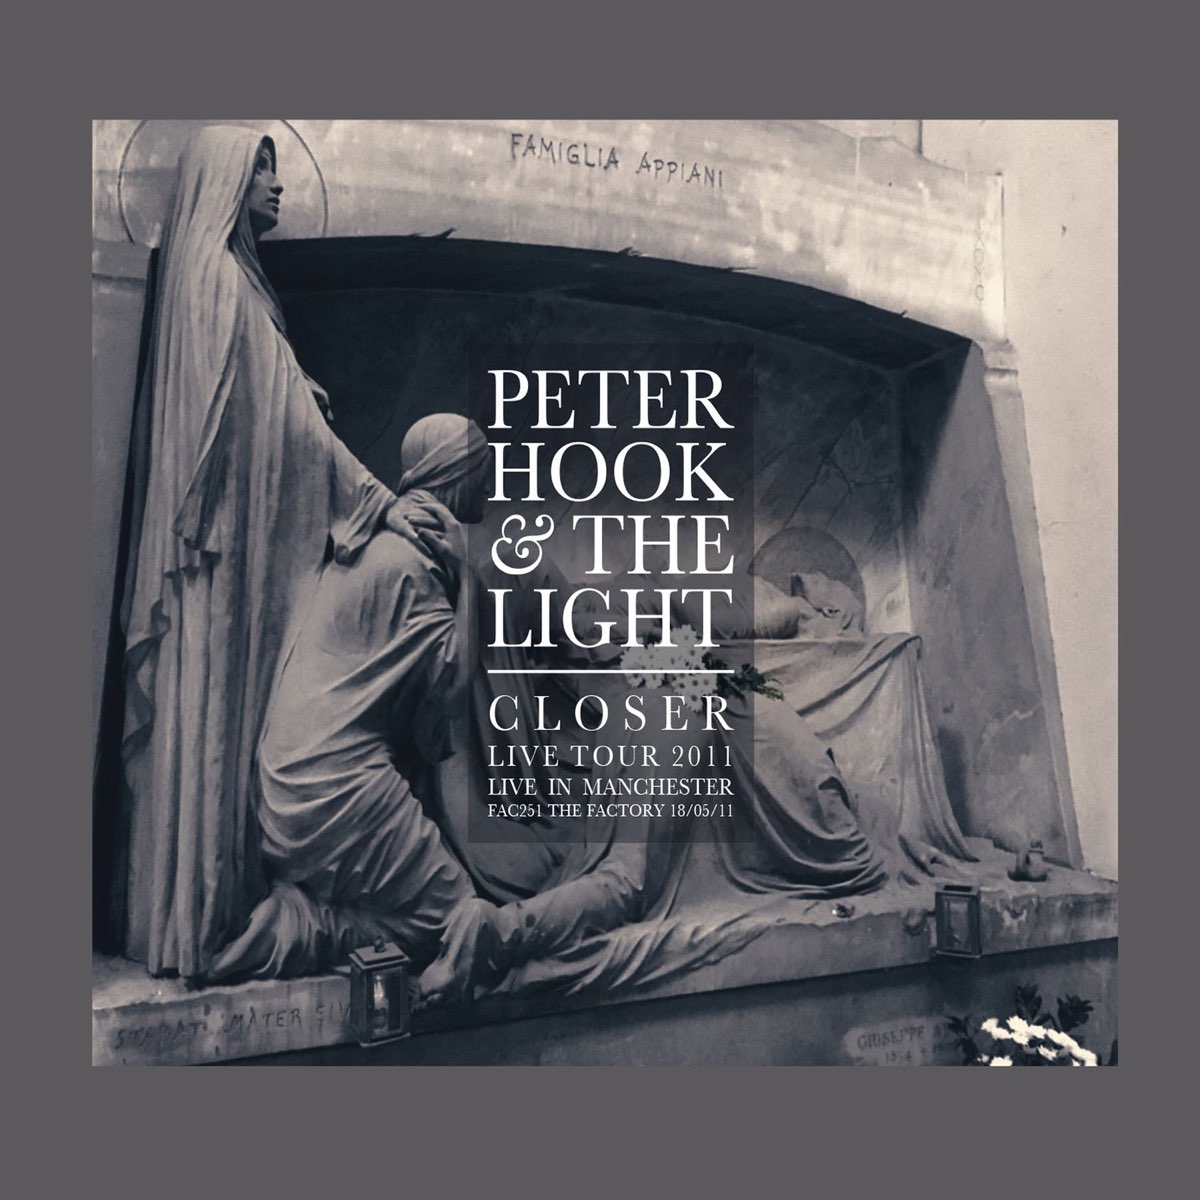 Close the light. Peter Hook. Peter Hook and the Light Manchester Academy. Peter Hook and the Light closer t Shirt.